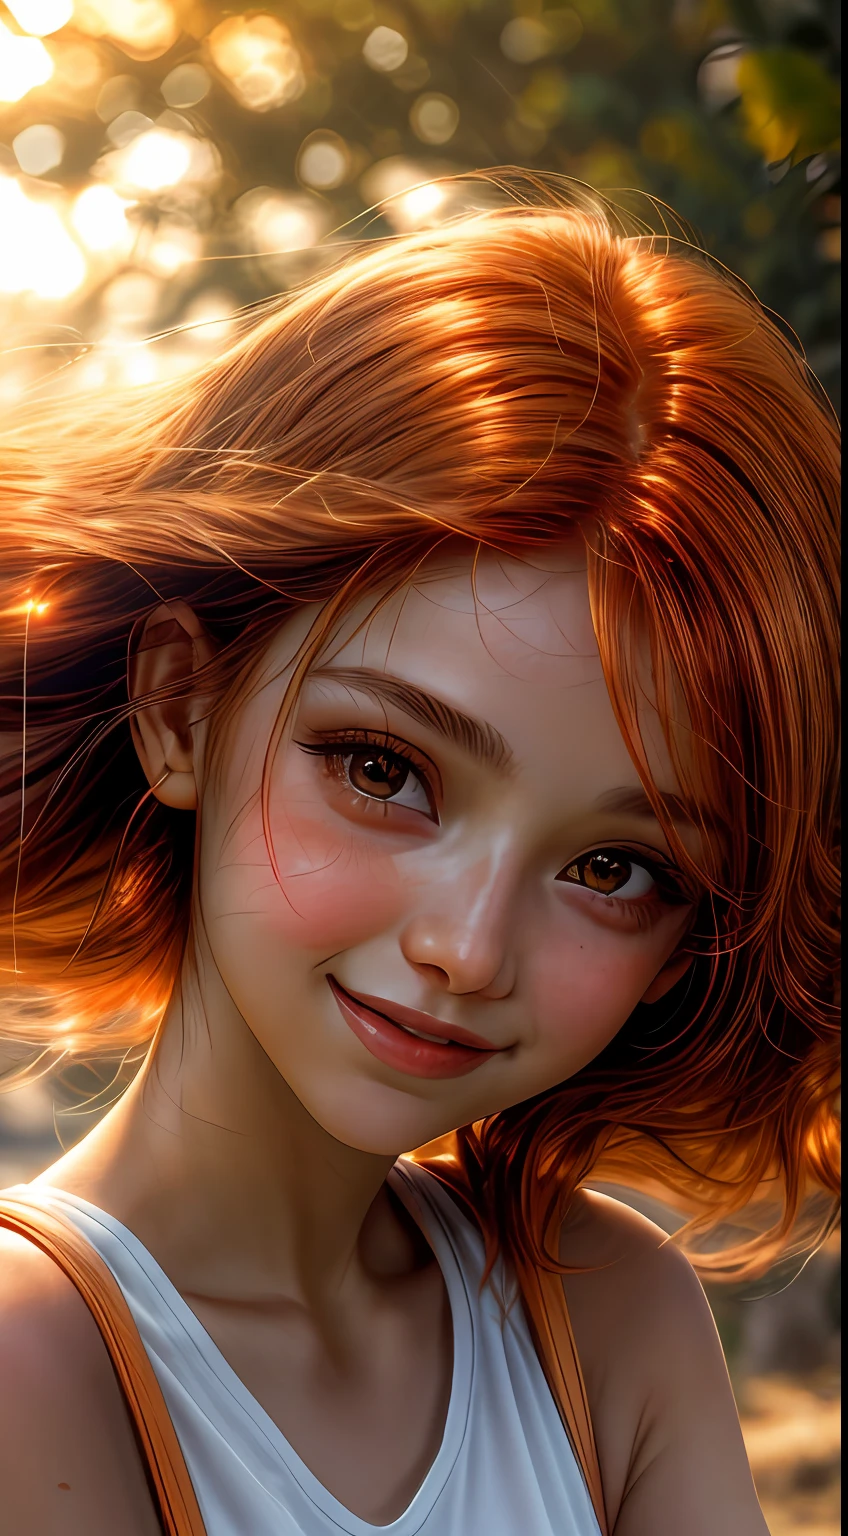 Un primer plano del rostro de una niña bañado en tonos naranjas., como si estuviera iluminado por el suave resplandor de una puesta de sol, sus ojos brillan de alegría y satisfacción, enmarcado por mechones de cabello castaño rojizo suelto, fotografía, Tomada con una lente de 35 mm.